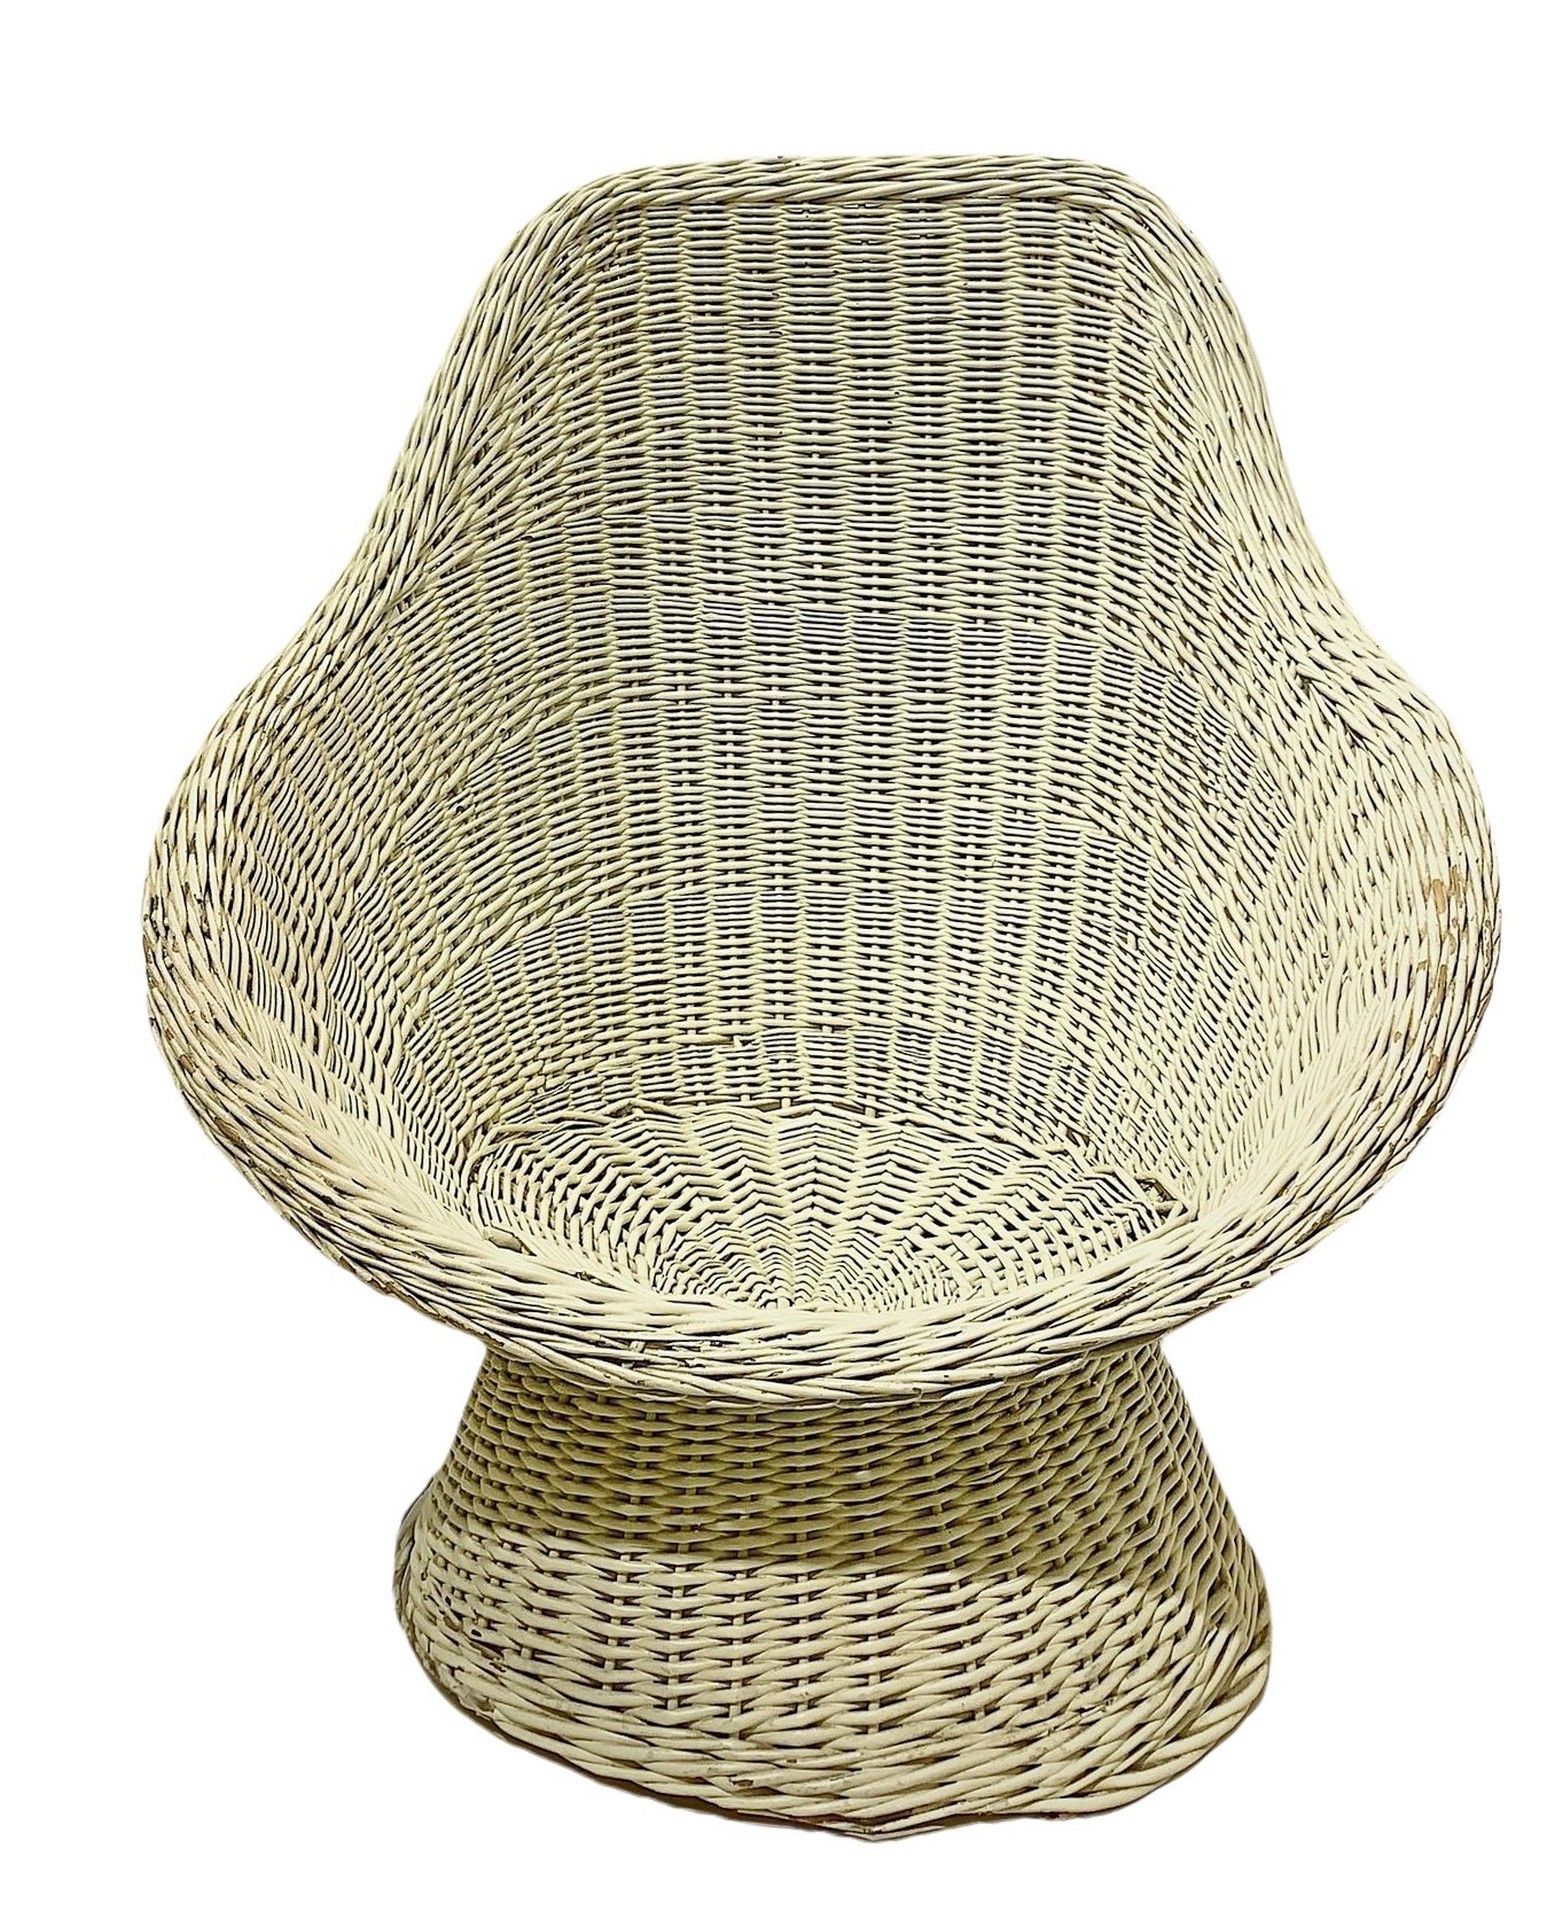 Null 柳条扶手椅90x75厘米 在沃伦-普拉特的风格中。象牙色漆面柳条扶手椅